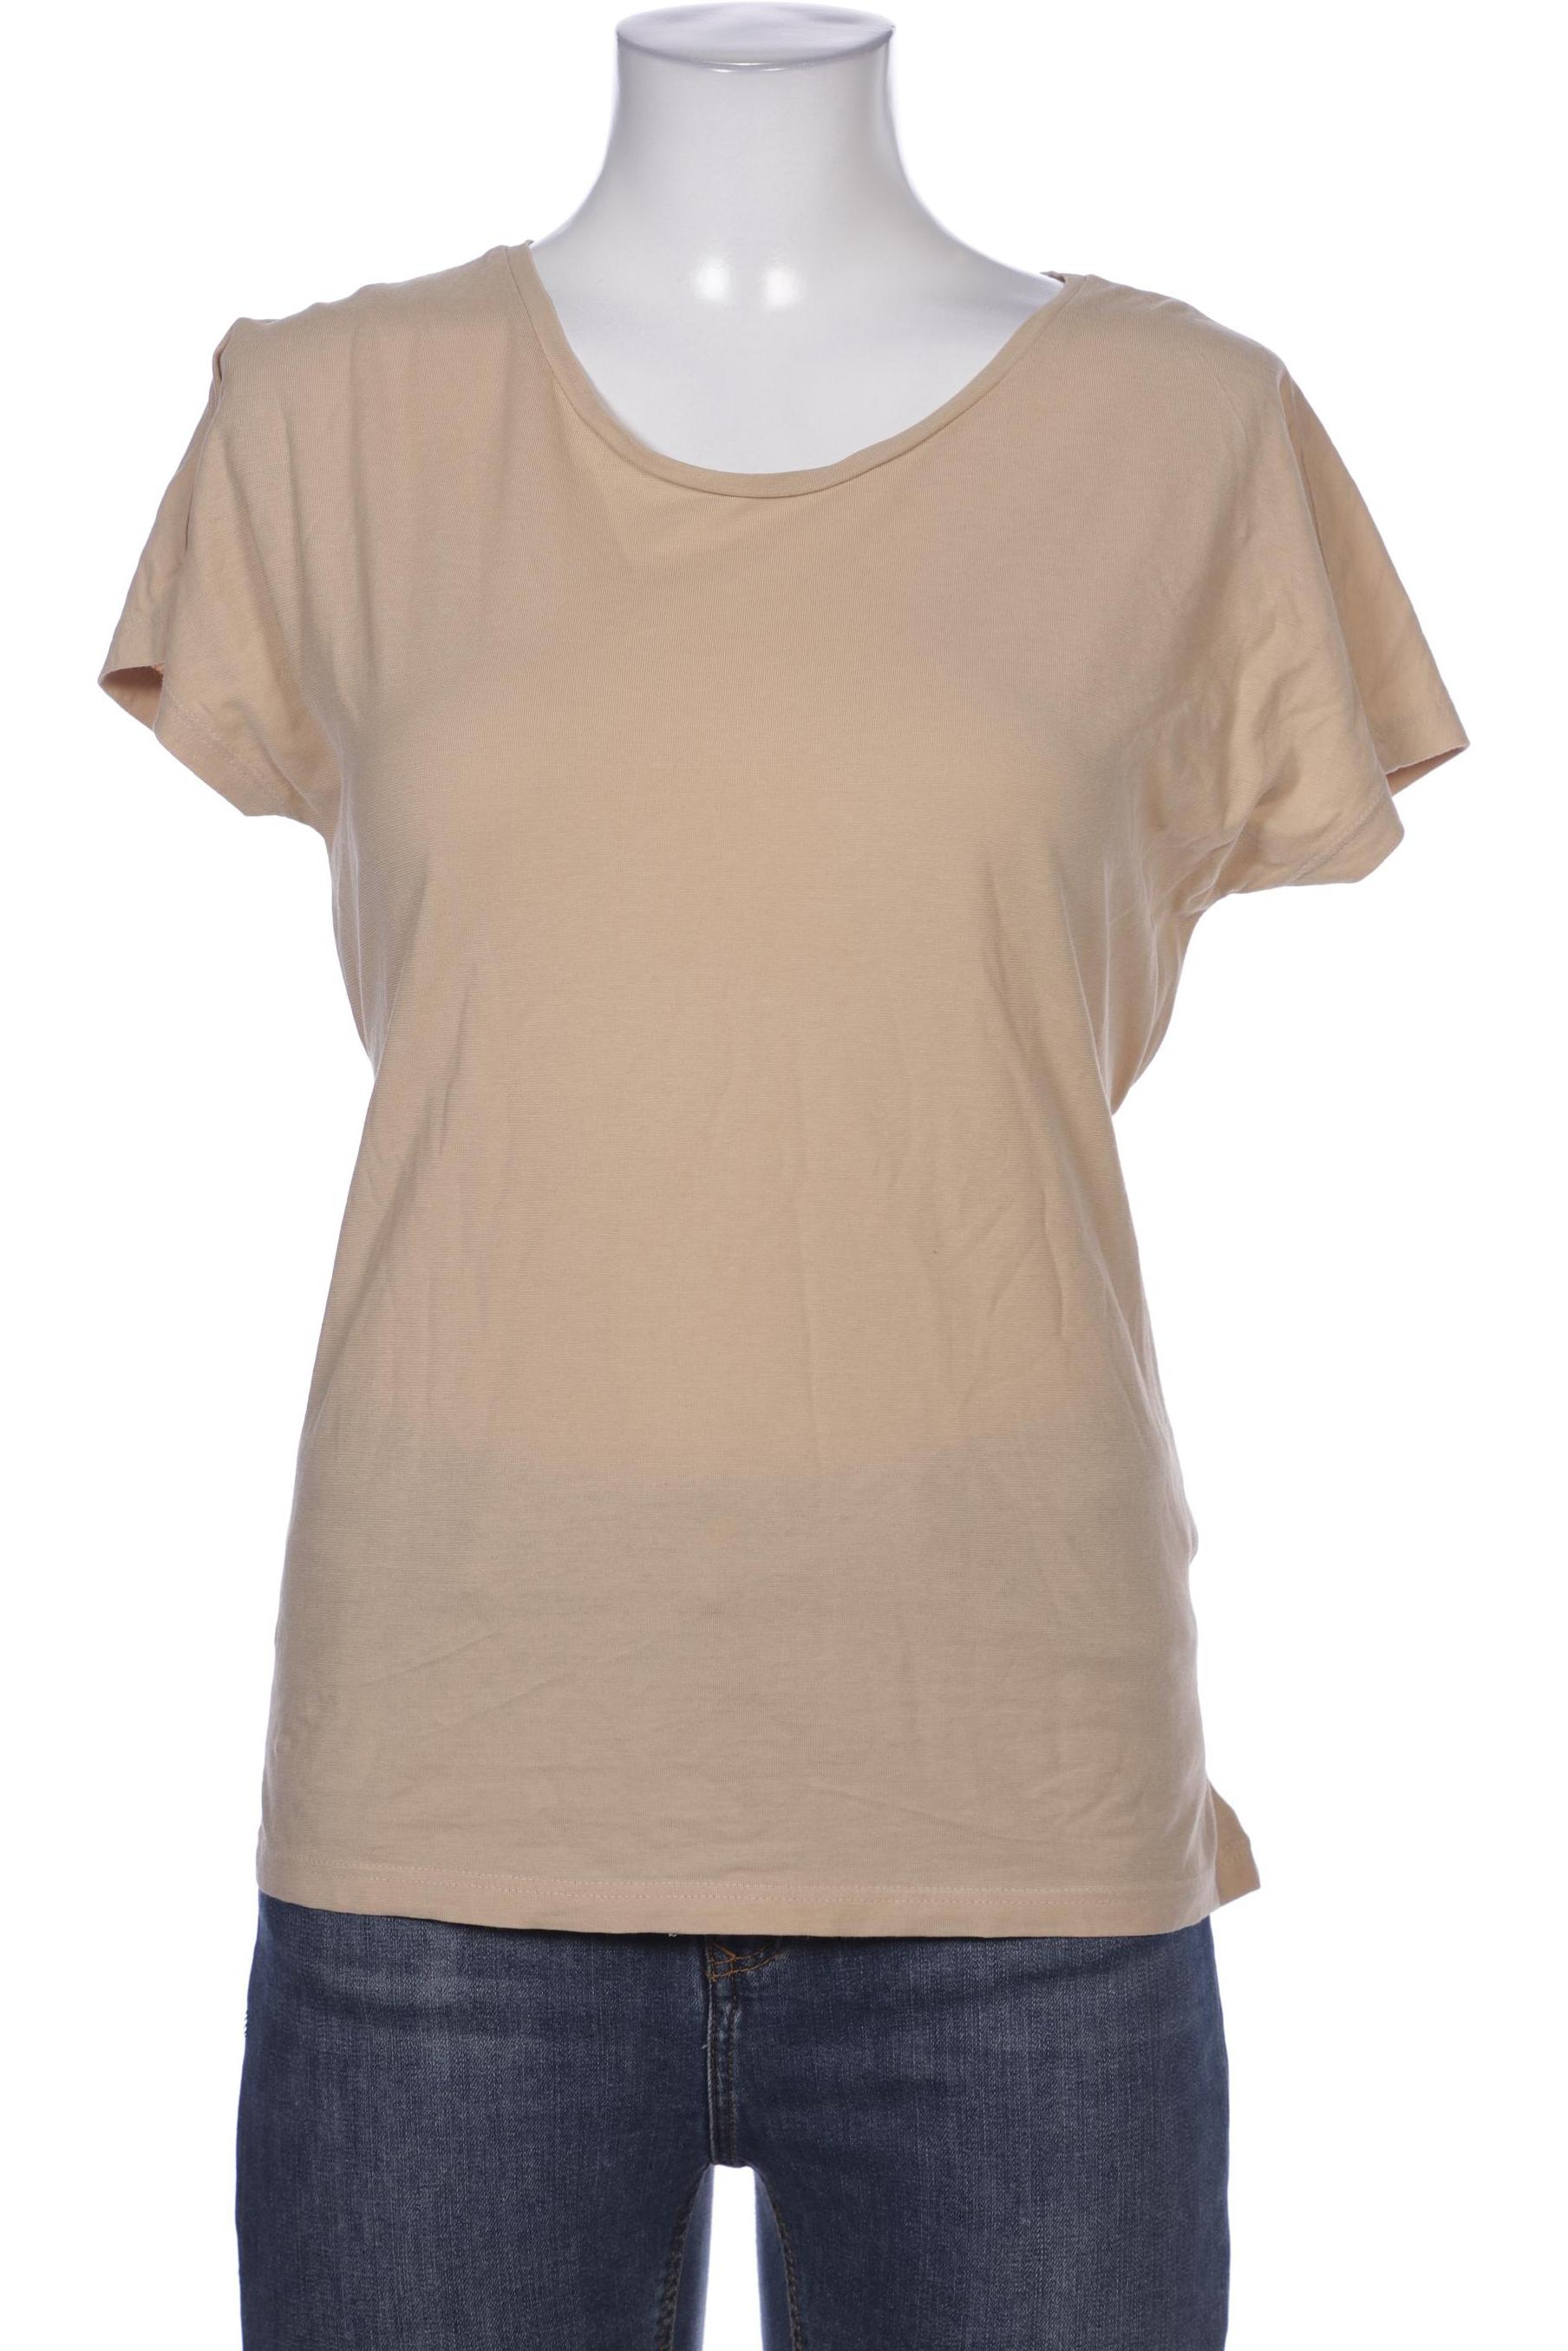 hessnatur Damen T-Shirt, beige, Gr. 38 von hessnatur